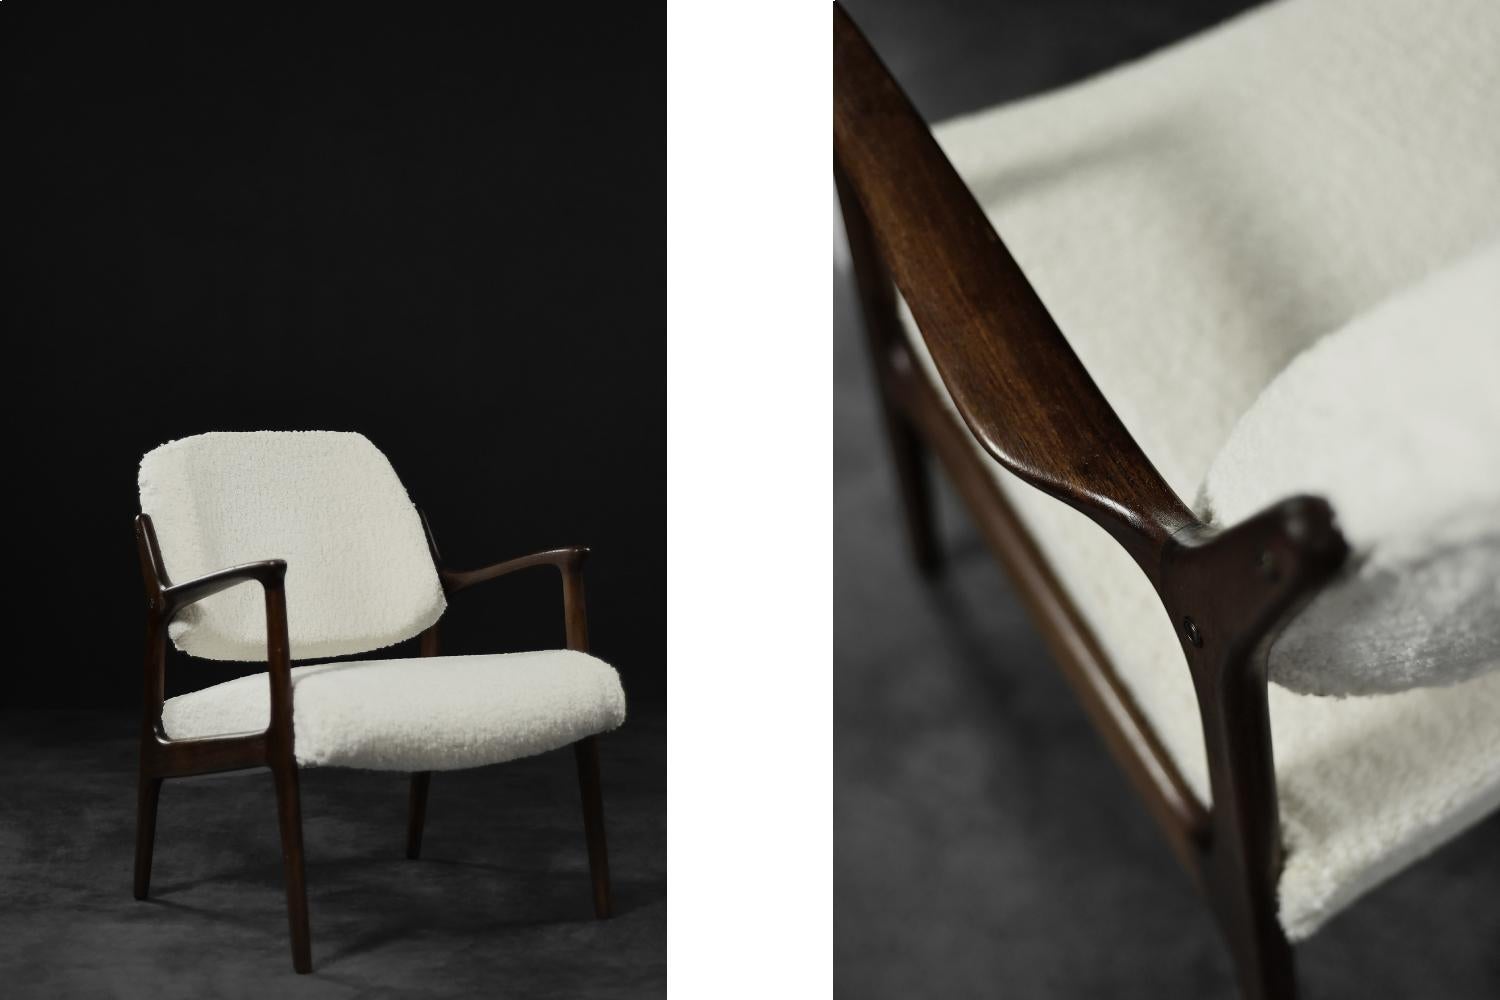 Dieser modernistische Domus-Sessel wurde in den 1960er Jahren von Inge Andersson für die schwedische Manufaktur Bröderna Andersson entworfen. Das elegante Gestell des Sessels ist aus Teakholz in einem kastanienbraunen Farbton. Die Stuhlbeine sind